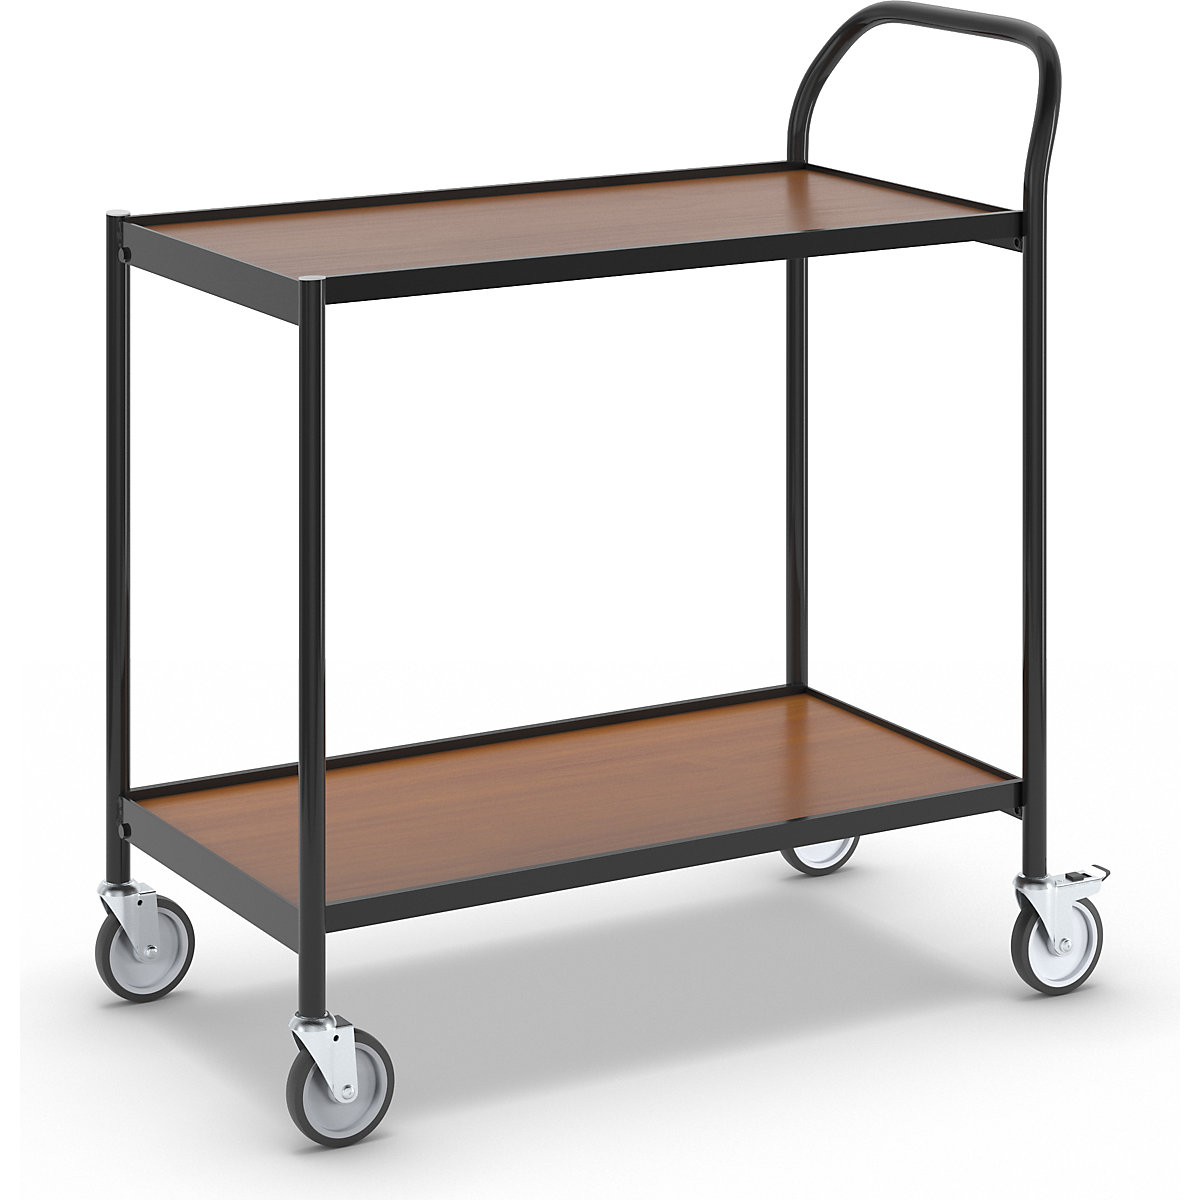 Stolový vozík – HelgeNyberg, 2 etáže, d x š 800 x 420 mm, černá / buk-12